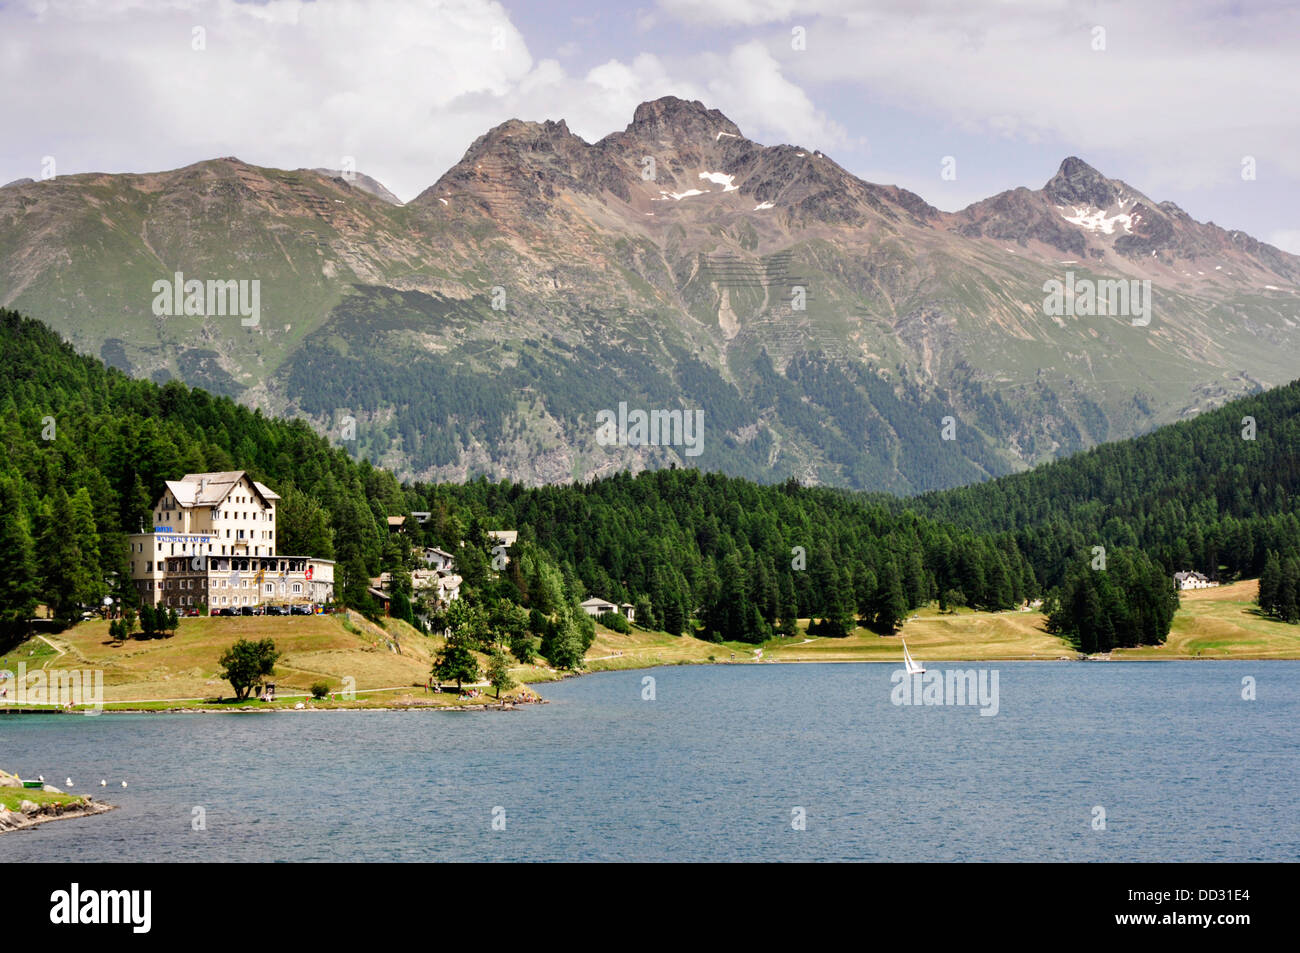 Suisse - St Moritz - le lac - montagne en toile de fond spectaculaire - pentes boisées - Blue Water - l'été du soleil - les nuages Banque D'Images